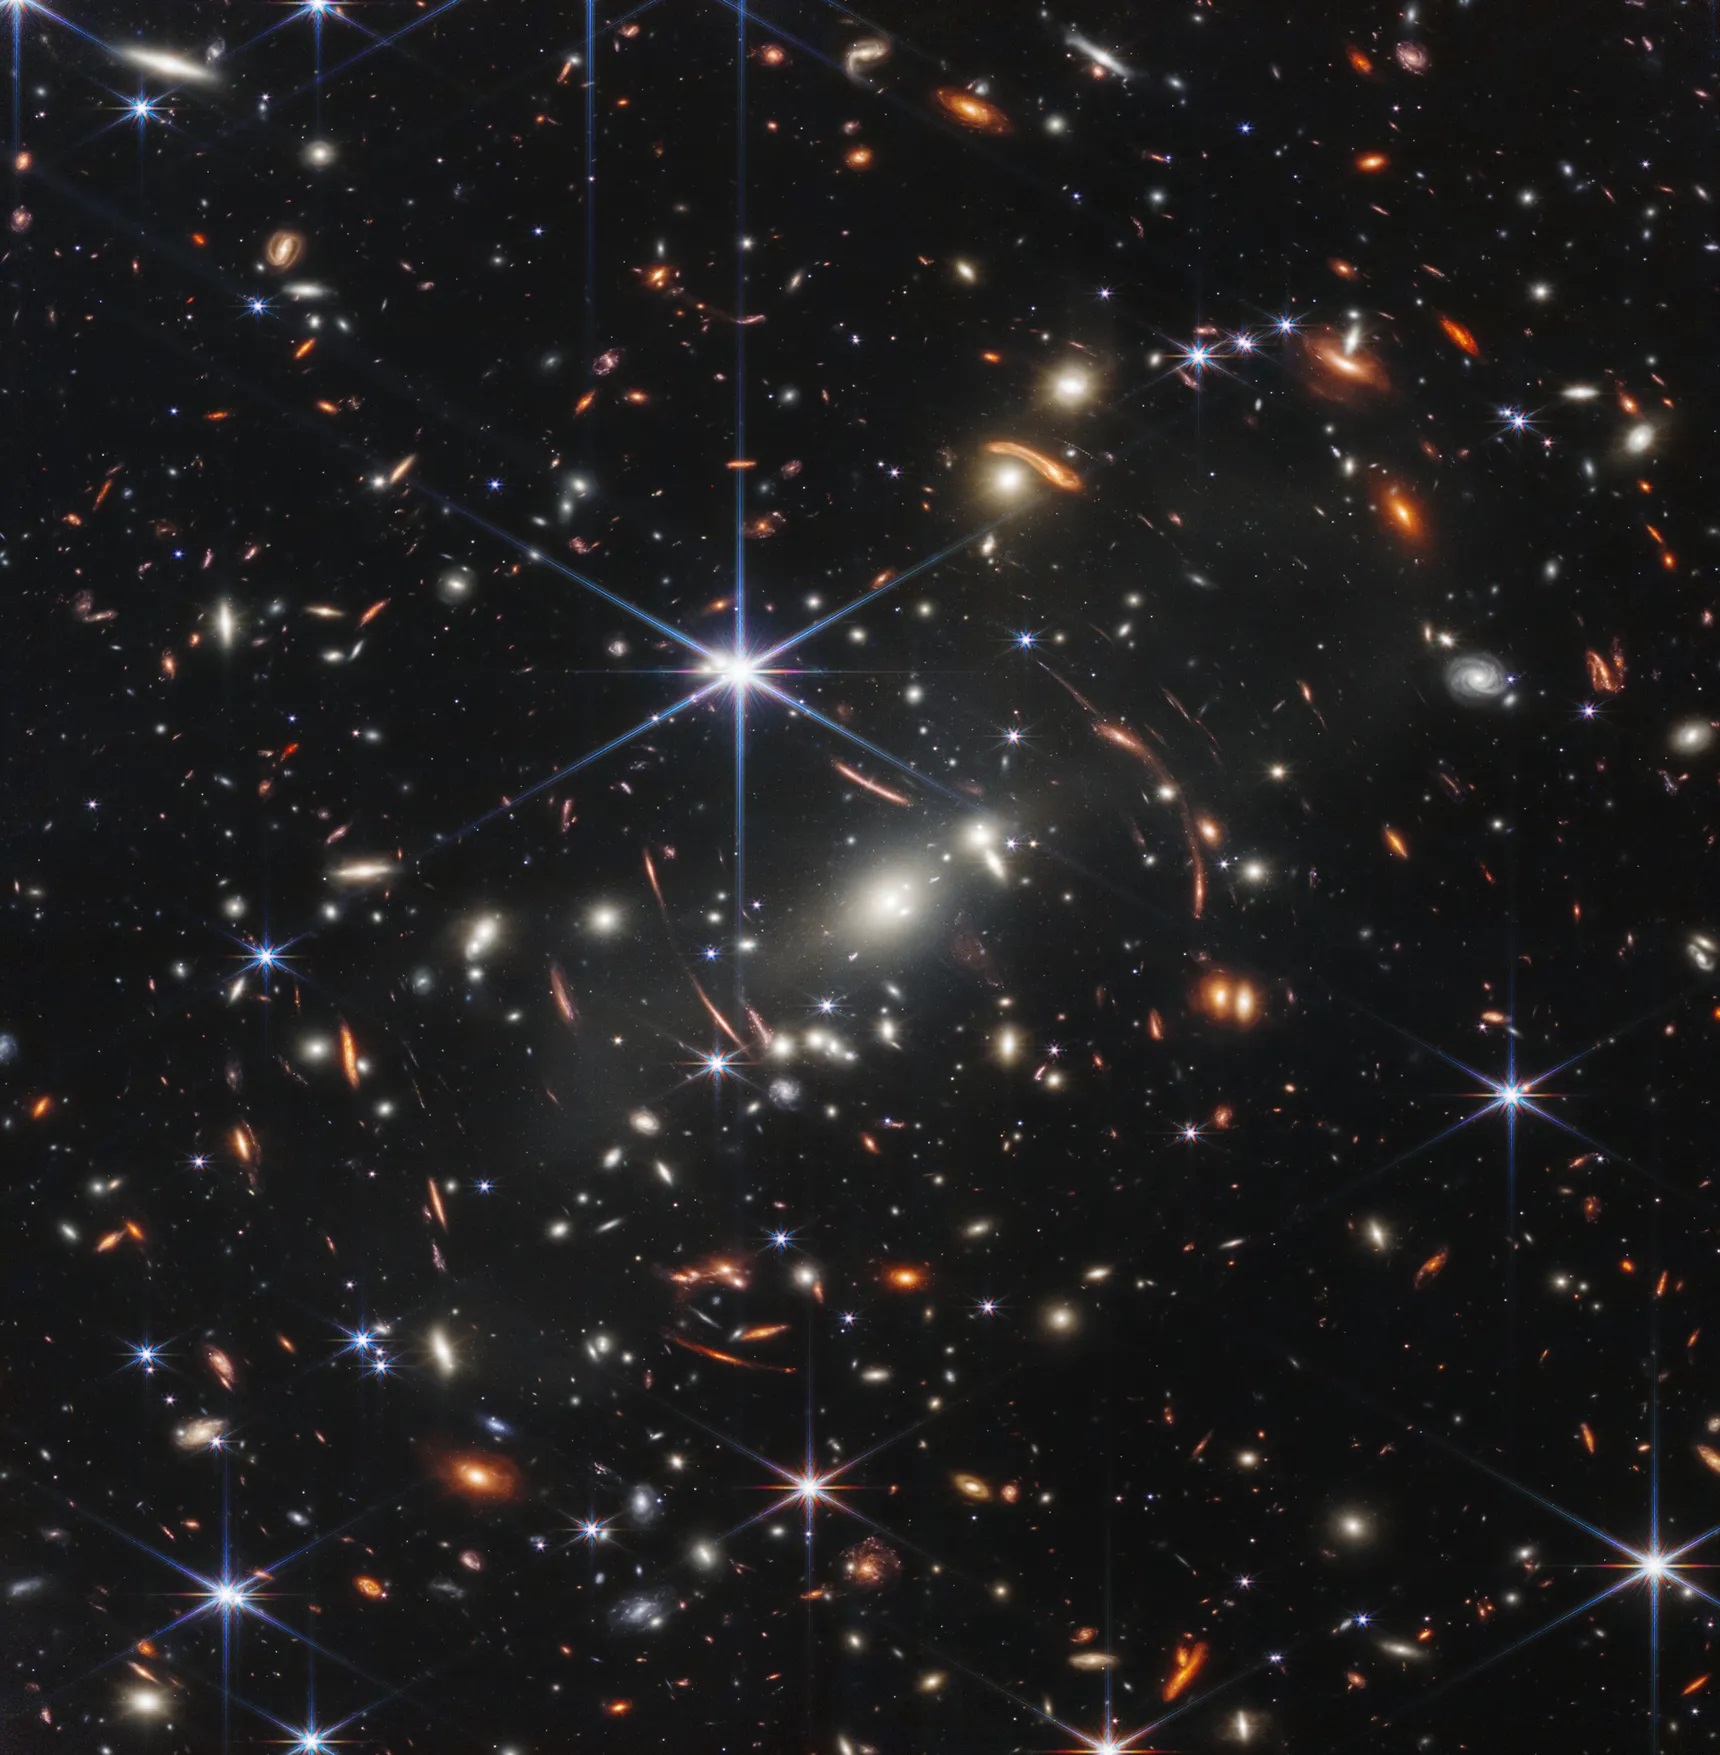 Imagens da NASA sobre a origem das estrelas apontam para Gênesis, diz cientista